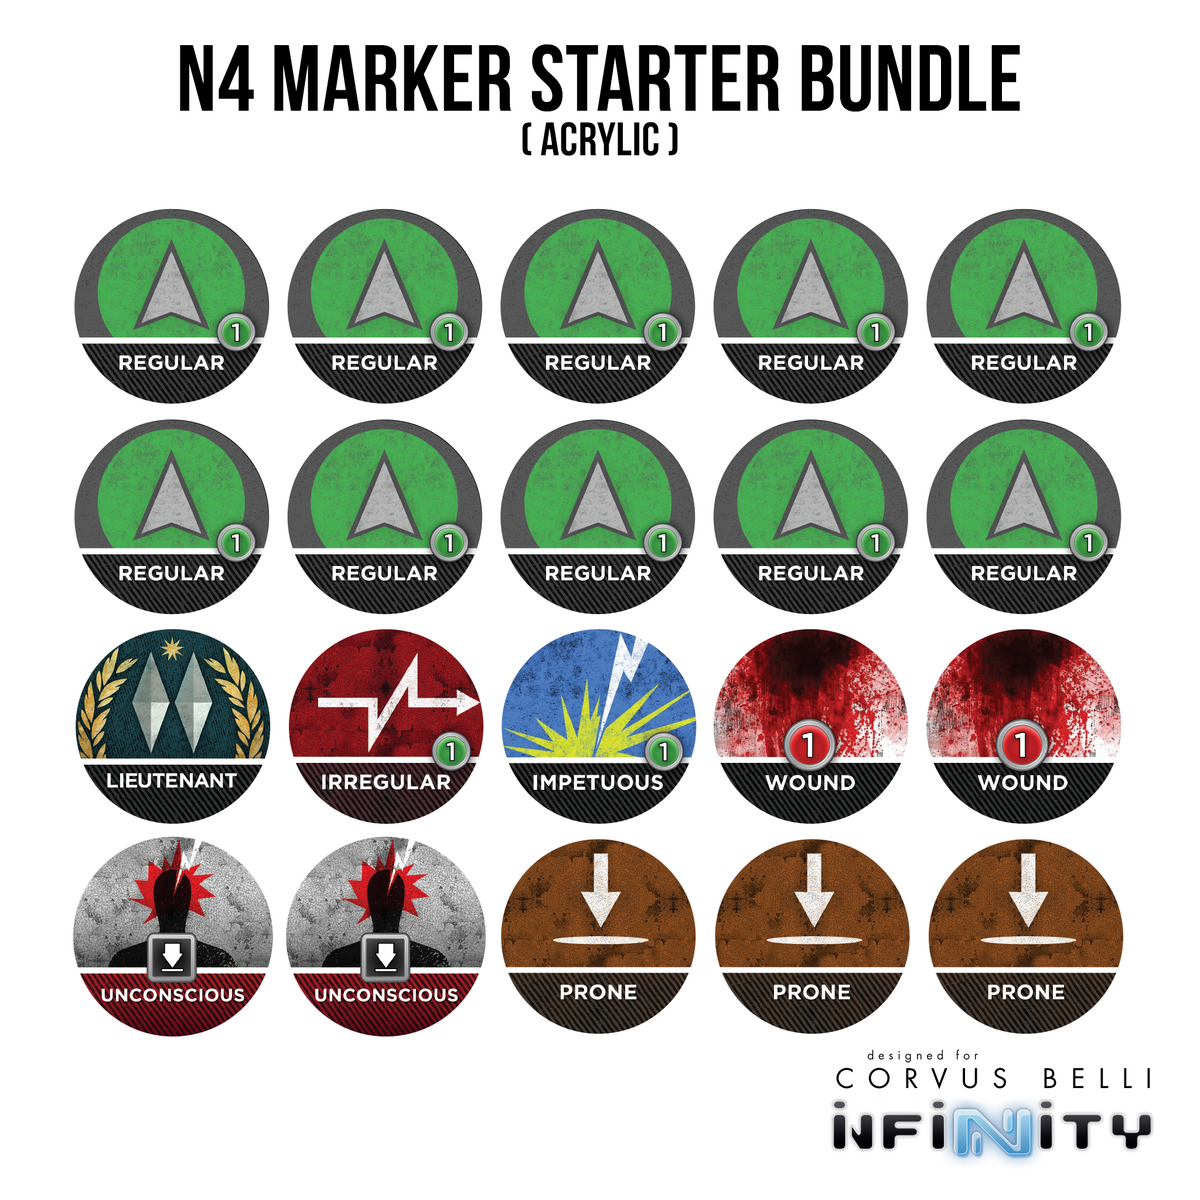 N4 Marker Starter Bundle